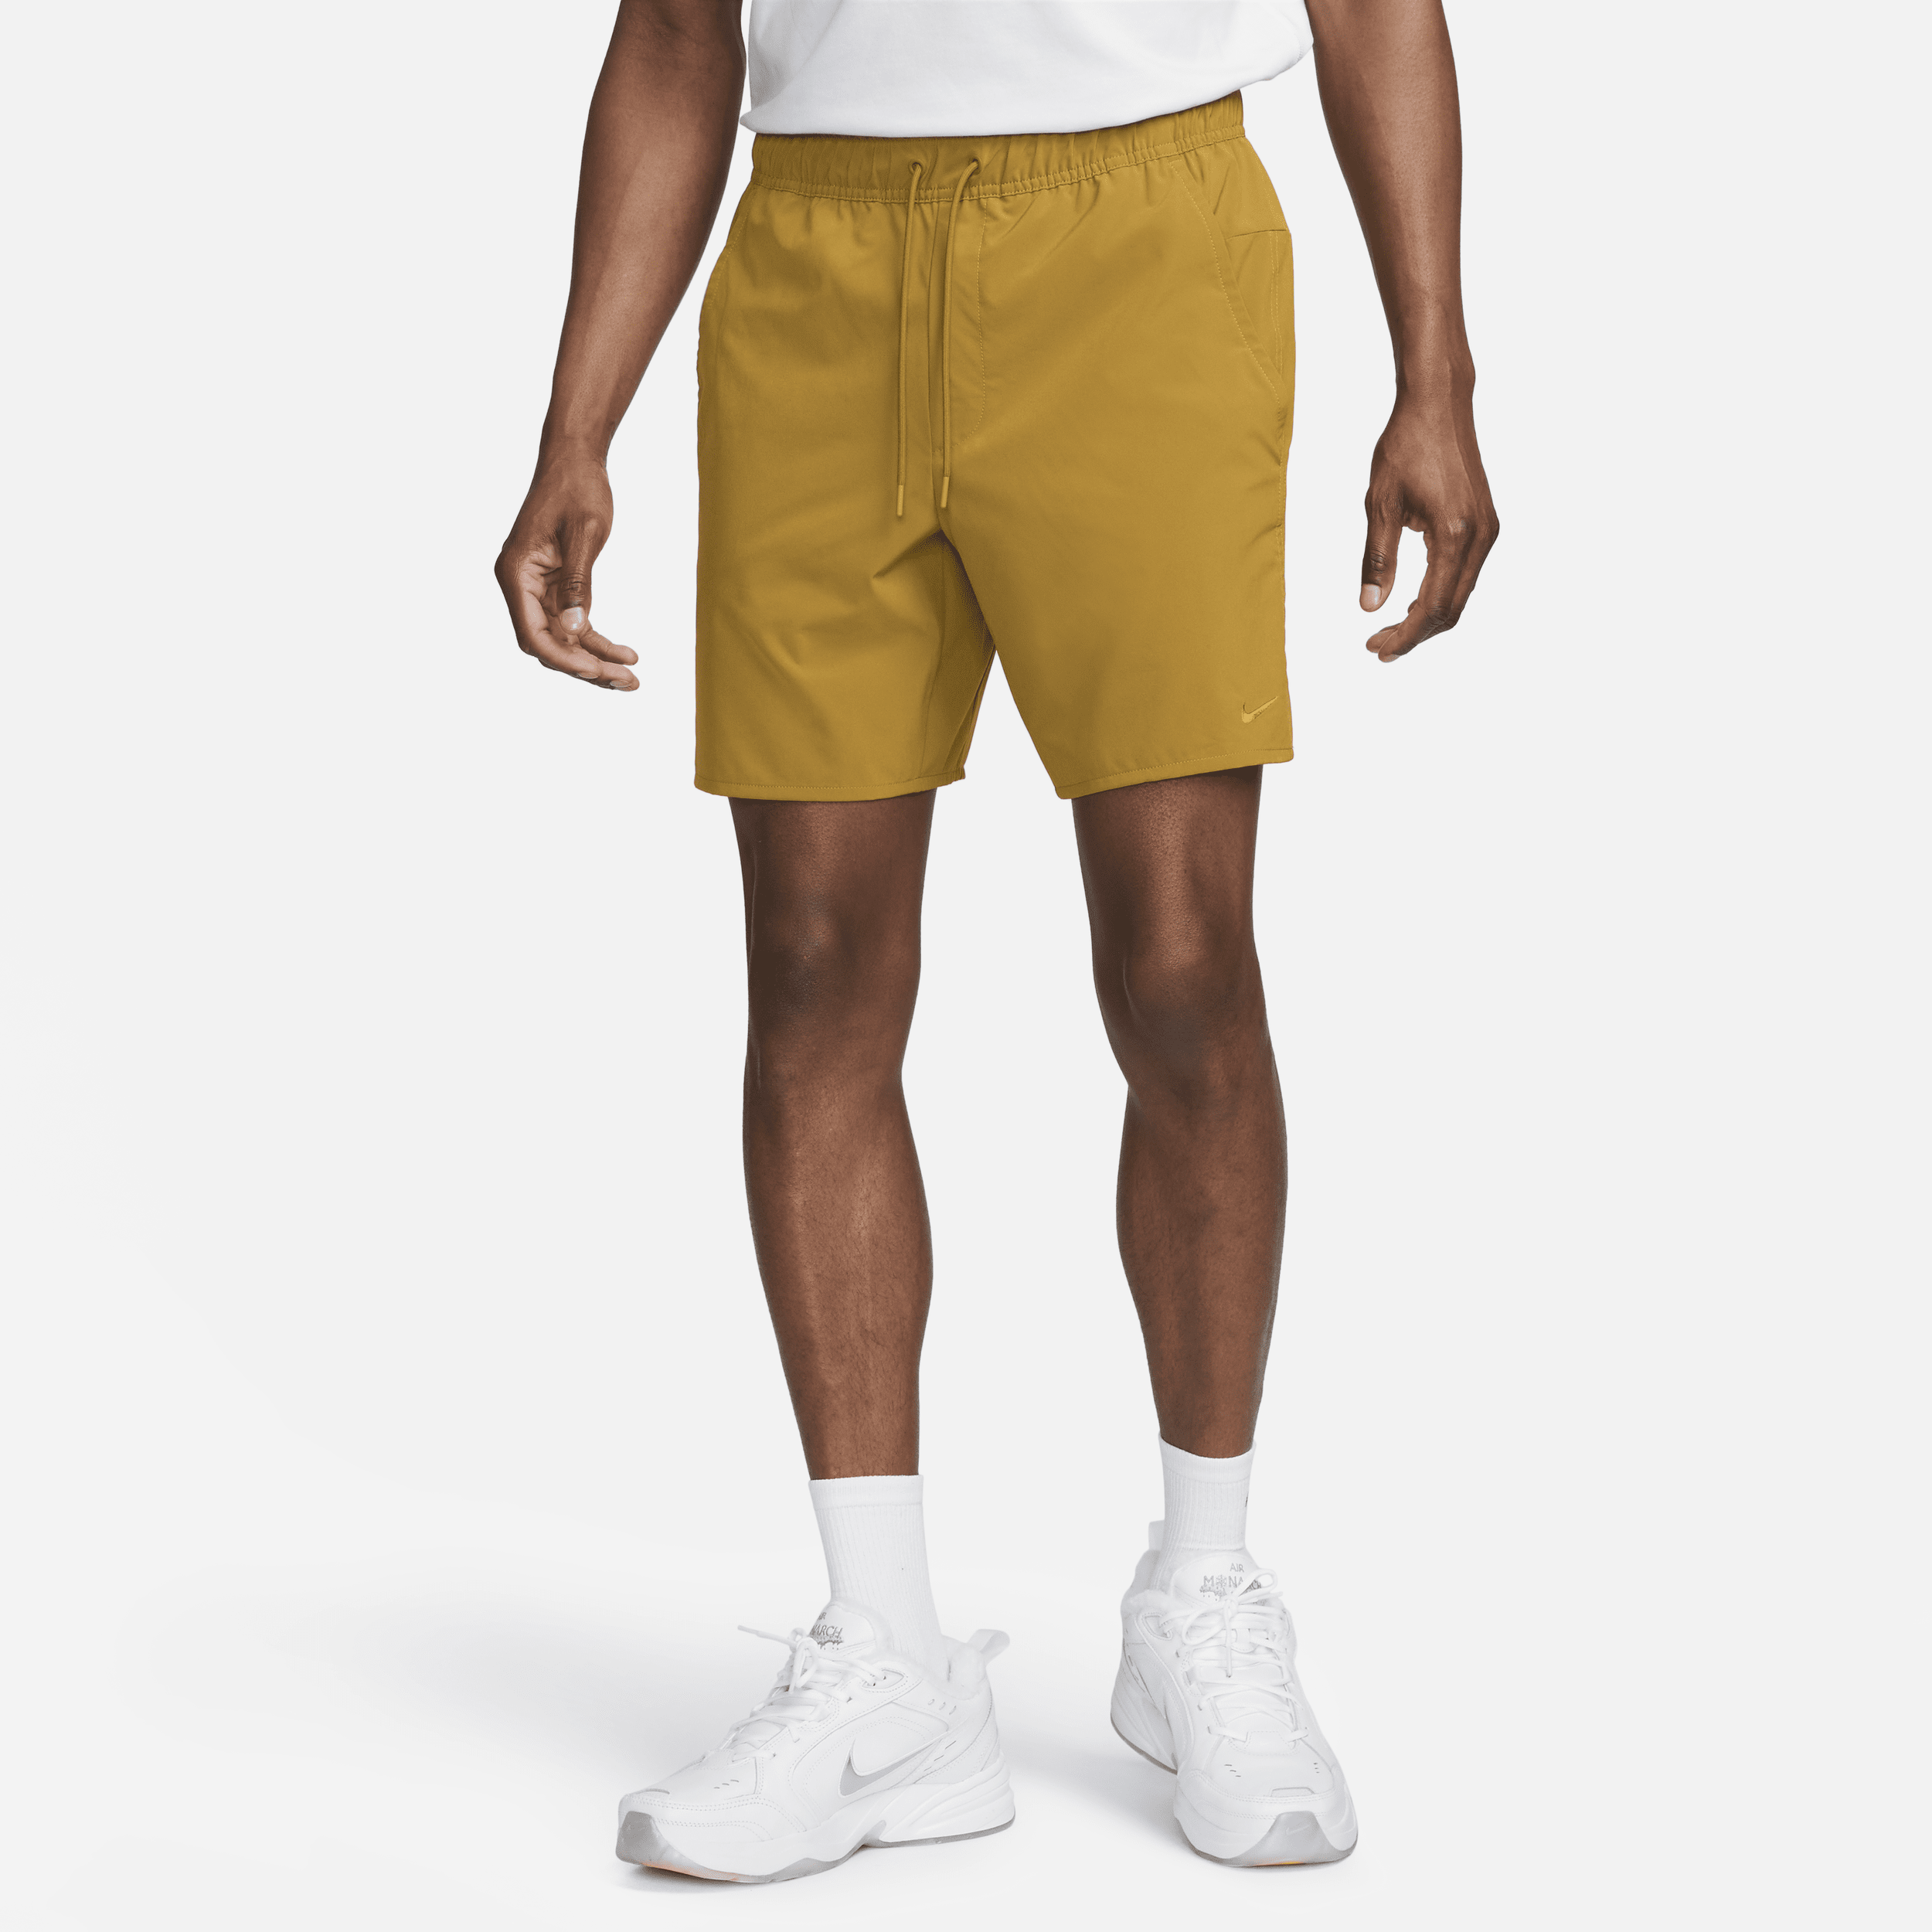 Alsidige Nike Unlimited-Dri-FIT-shorts (18 cm) uden for til mænd - brun